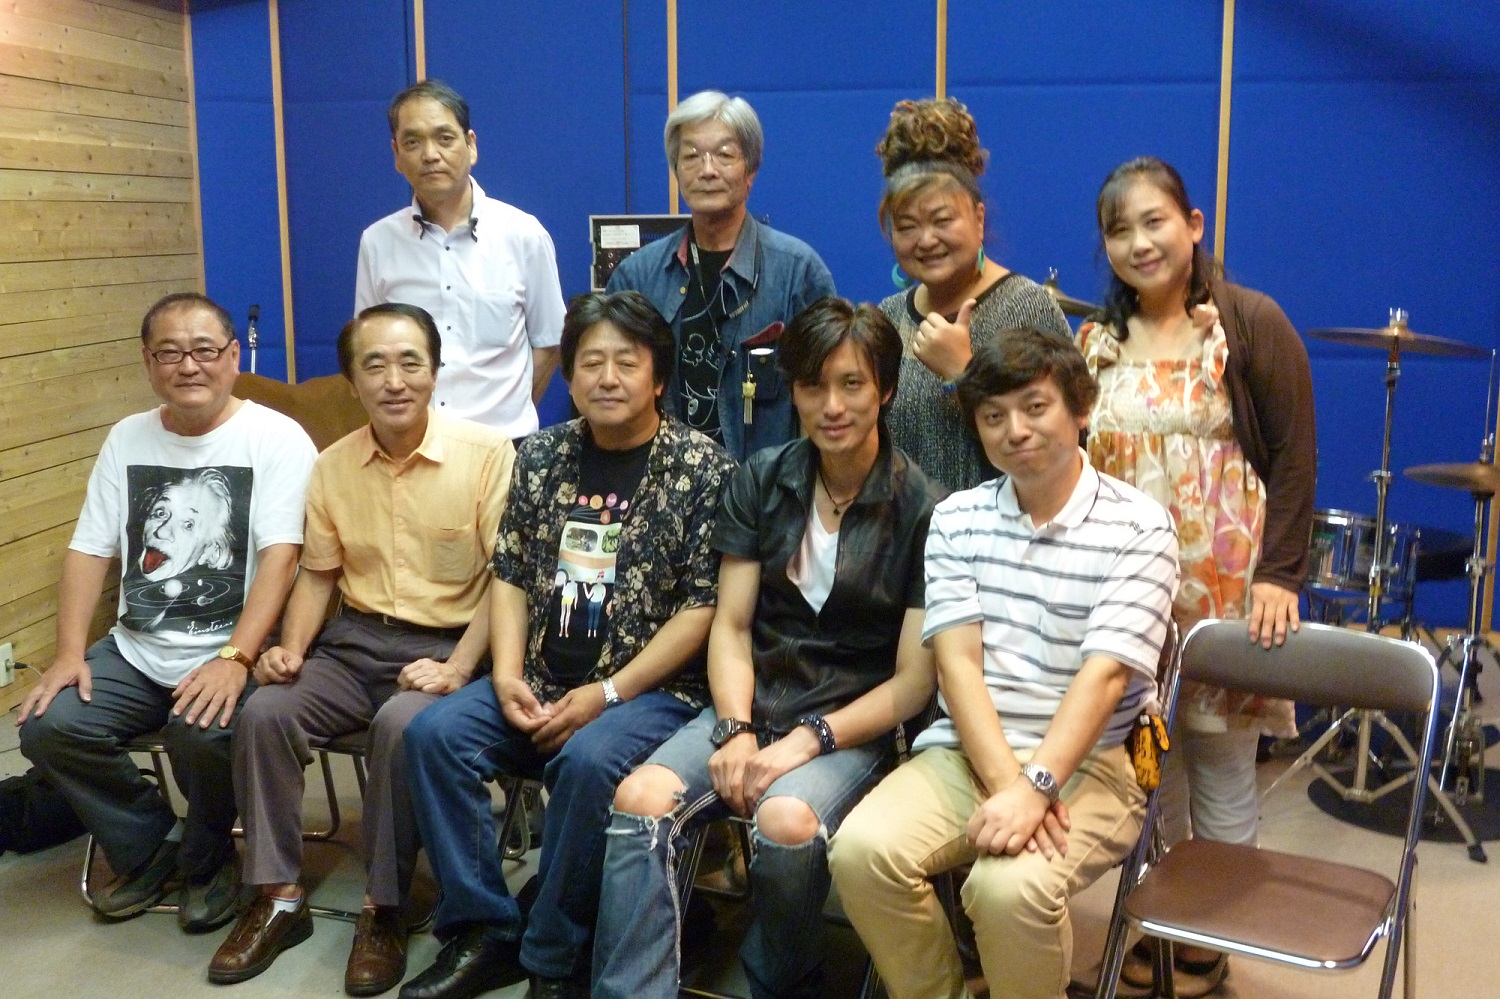 前列左から作詞家・川英雄さん、作曲家・武野良さん、BOSS、俳優でミュージシャンの毛利ケンイチさん、いわき市教育委員会の門馬さん。後列はいわき市の実行委員・根本さん、歌手の富士直美さんなどなど。